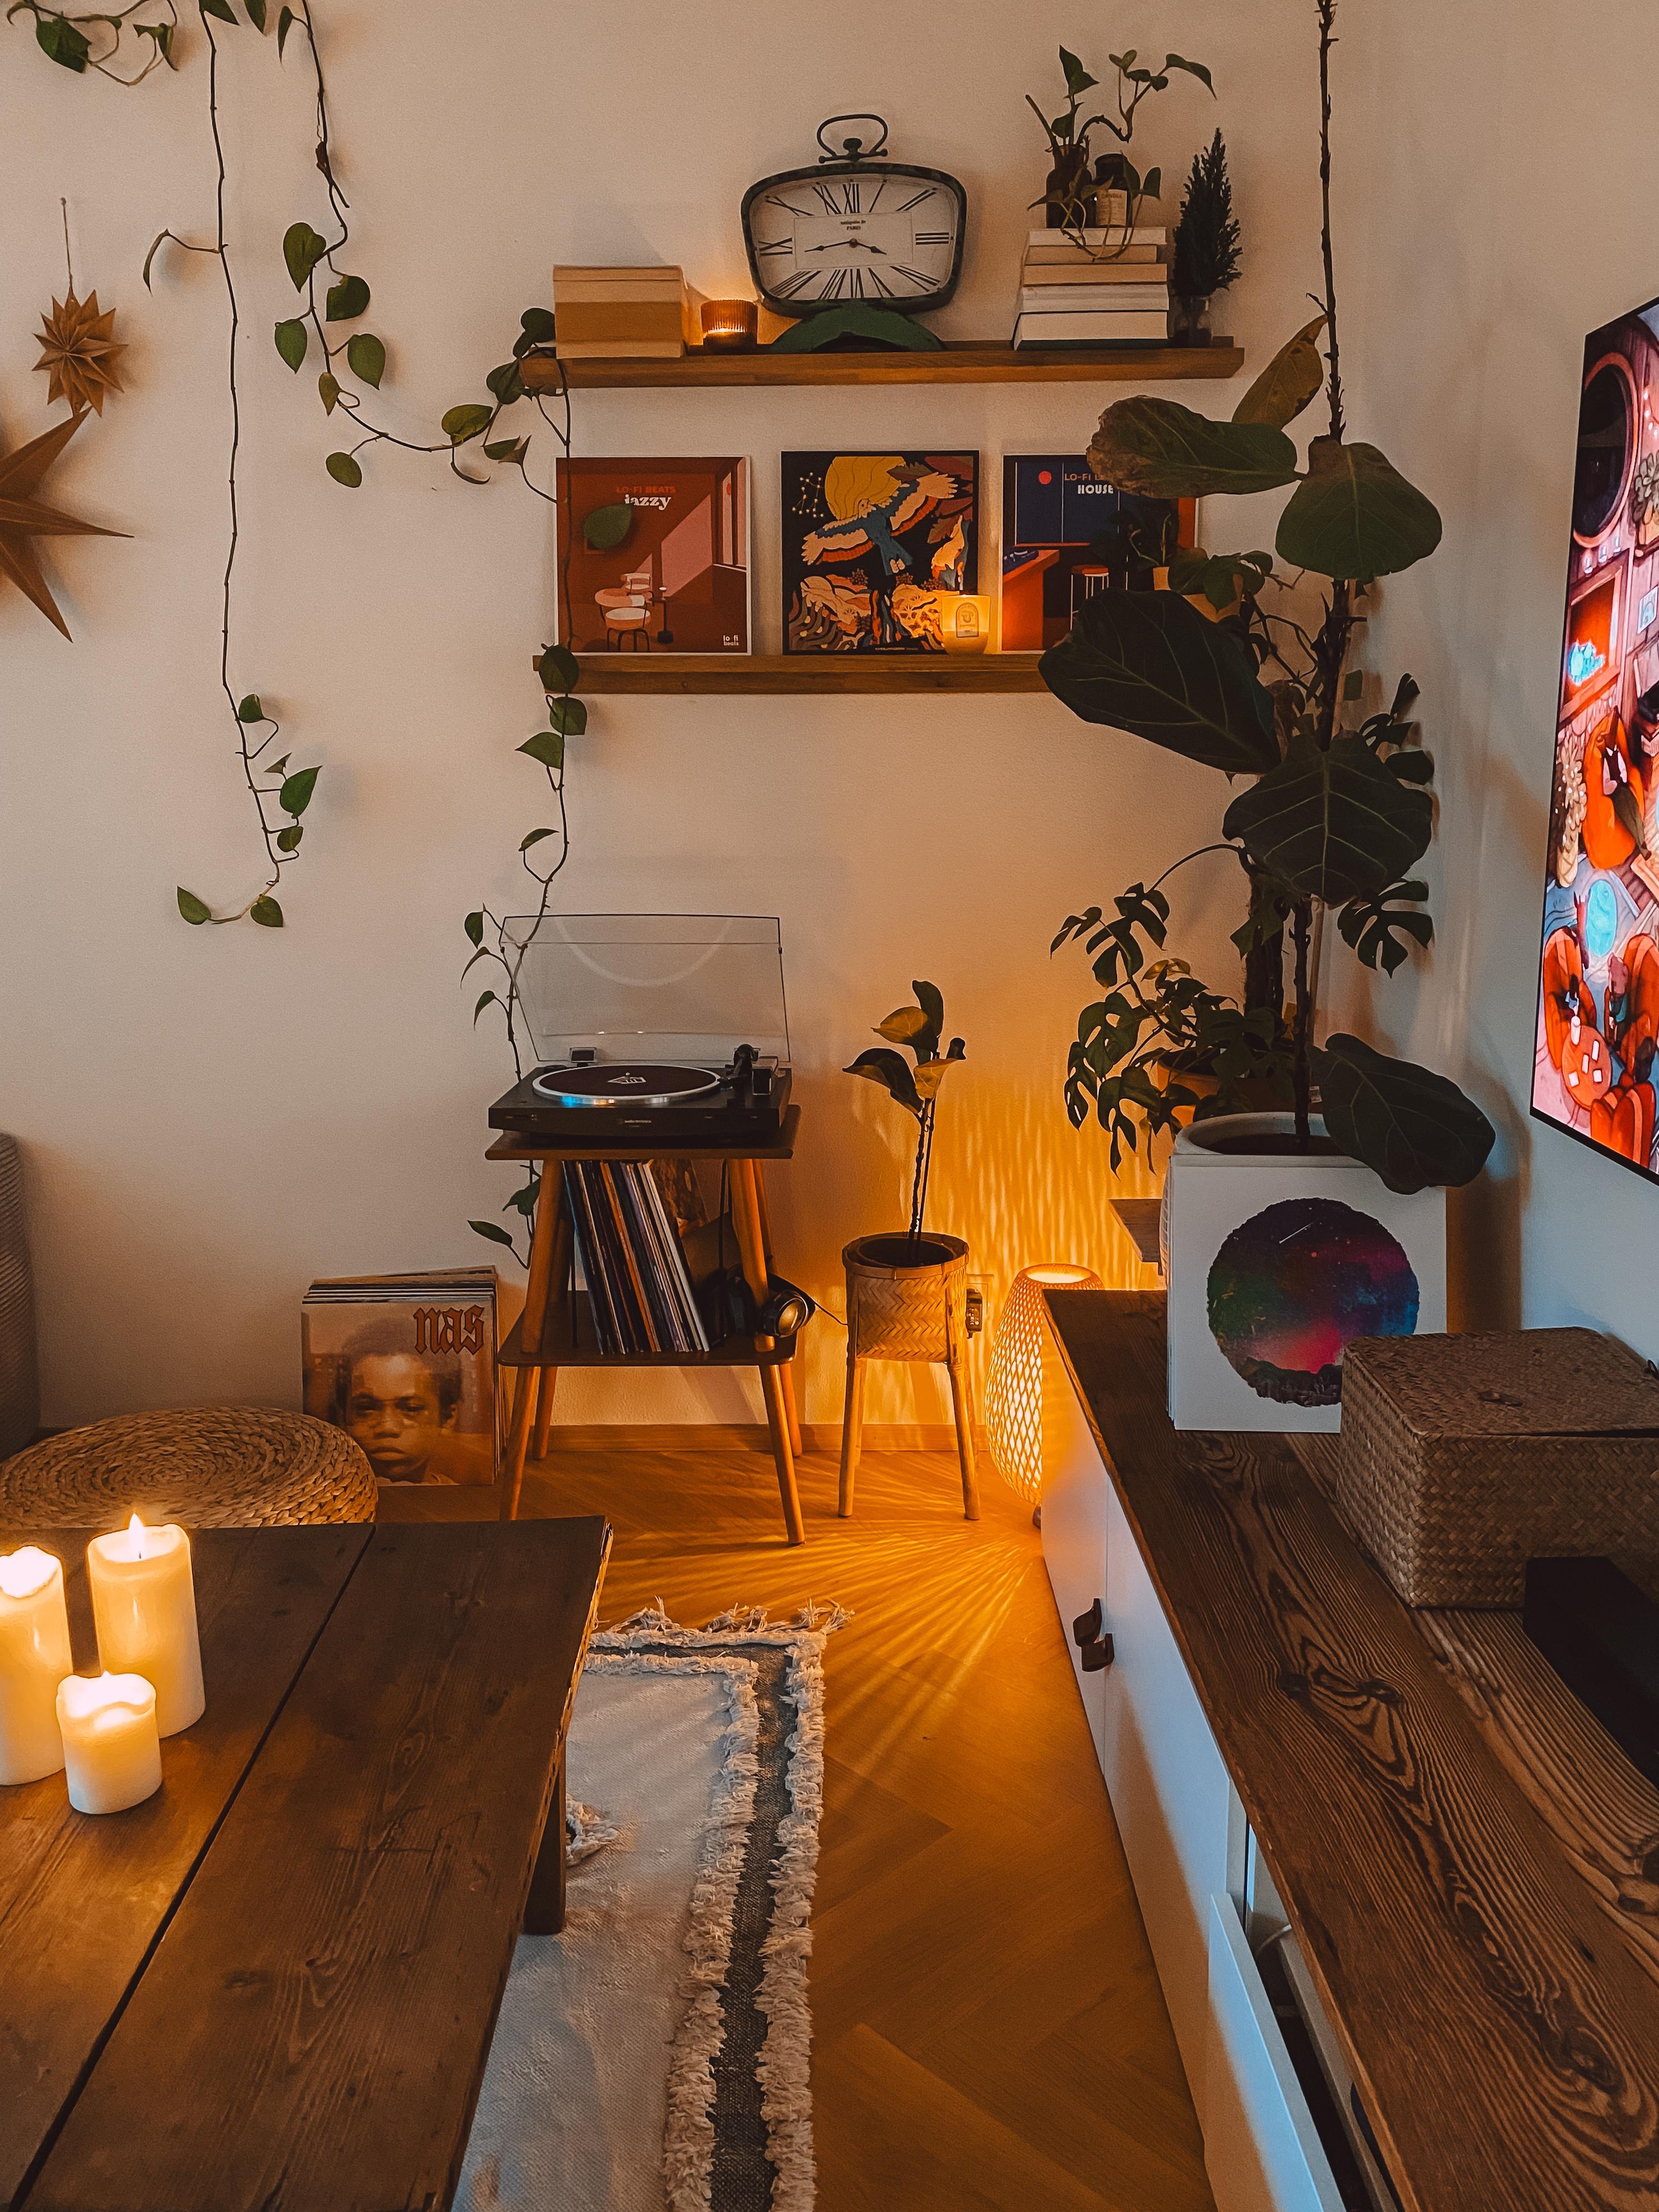 #wohnzimmer #bilderleiste #plattenspieler #vinyl #plattensammlung #ikea #besta #chillmode